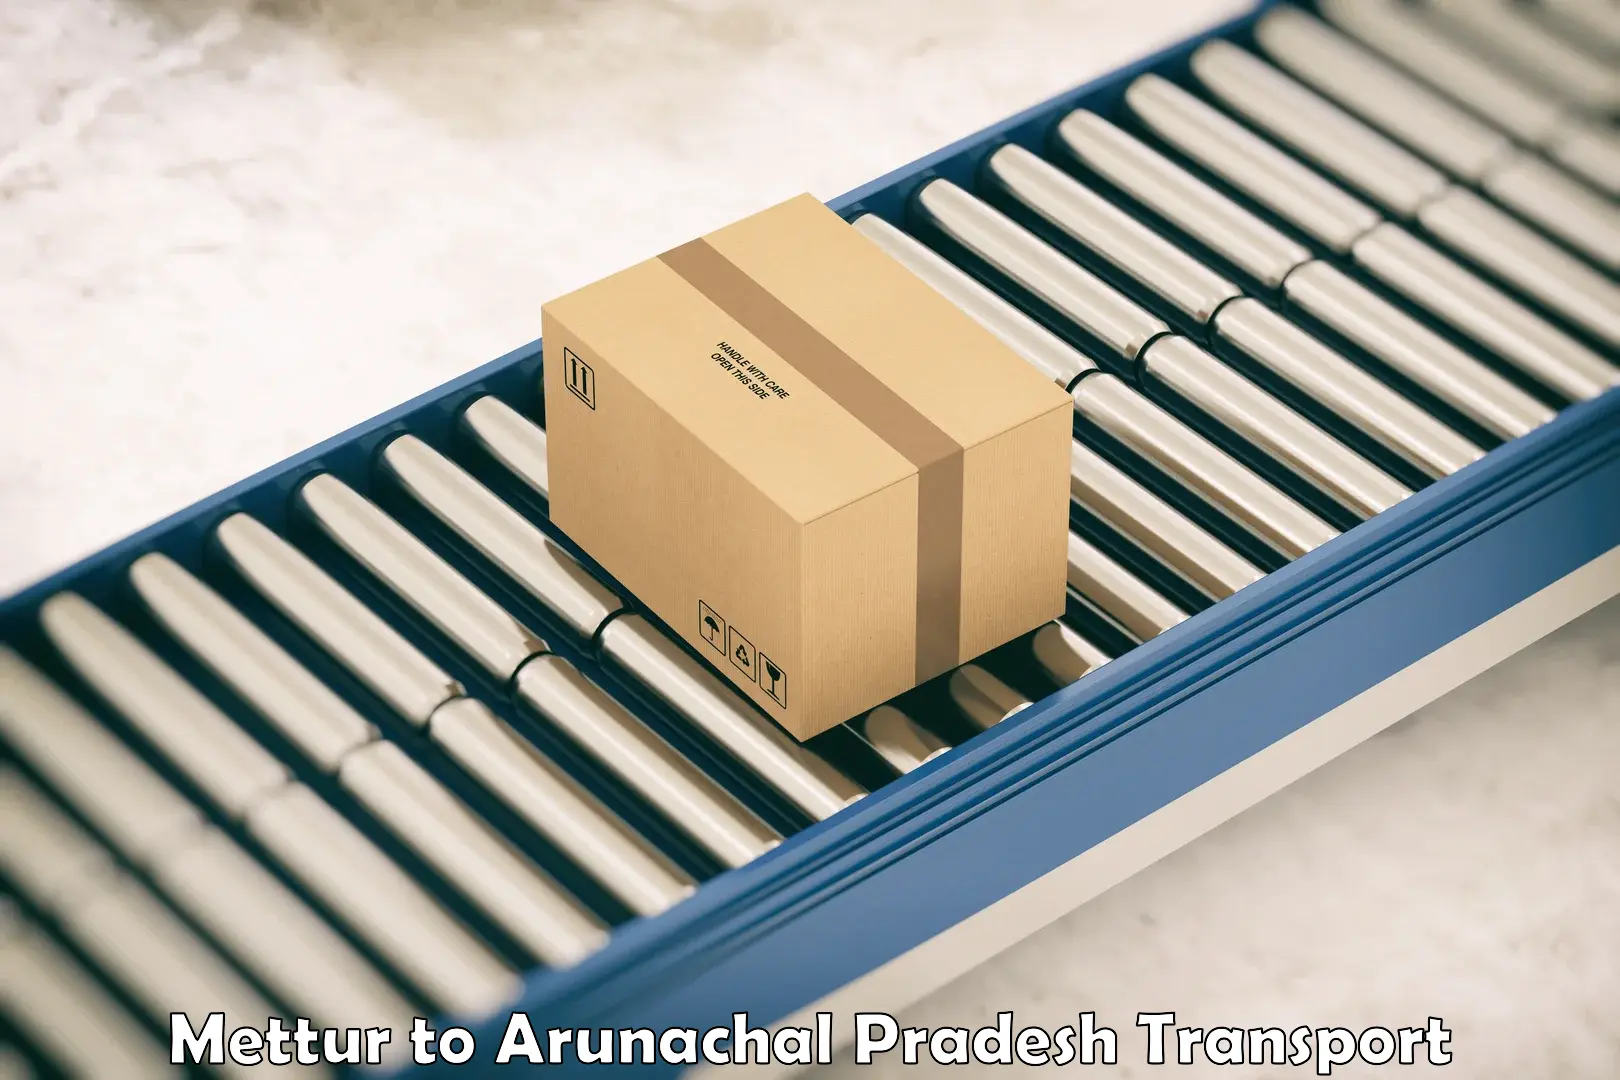 Vehicle parcel service Mettur to Arunachal Pradesh